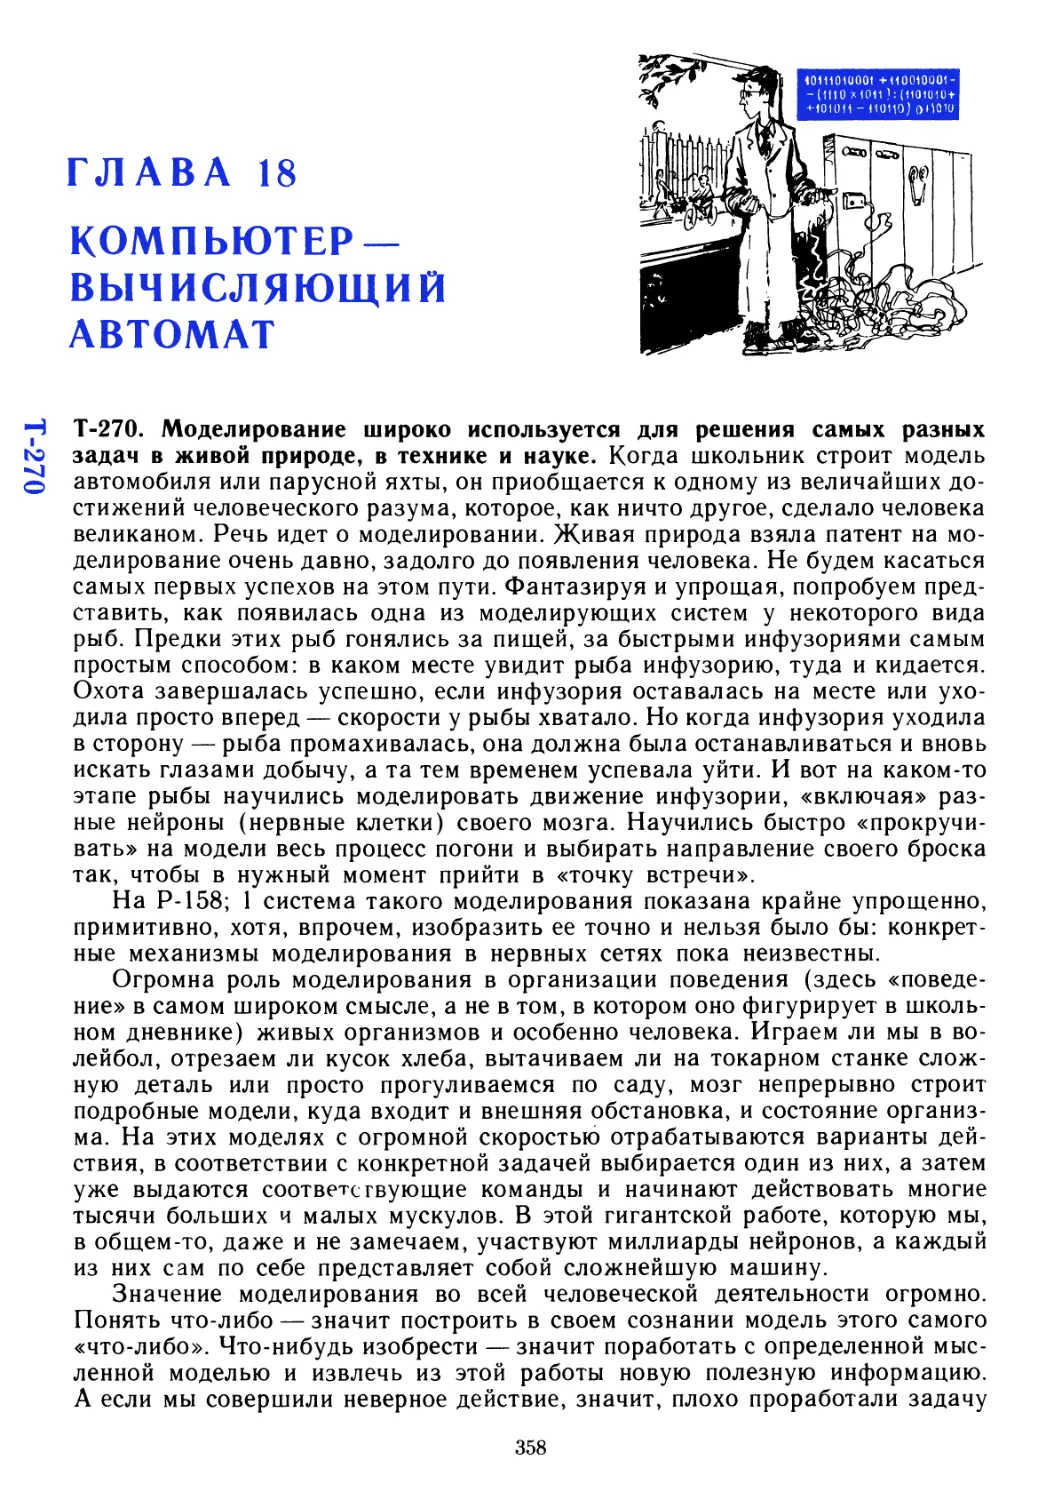 Глава 18 Компьютер — вычисляющий автомат Т-270 — Т-278
Т-270
Т-270